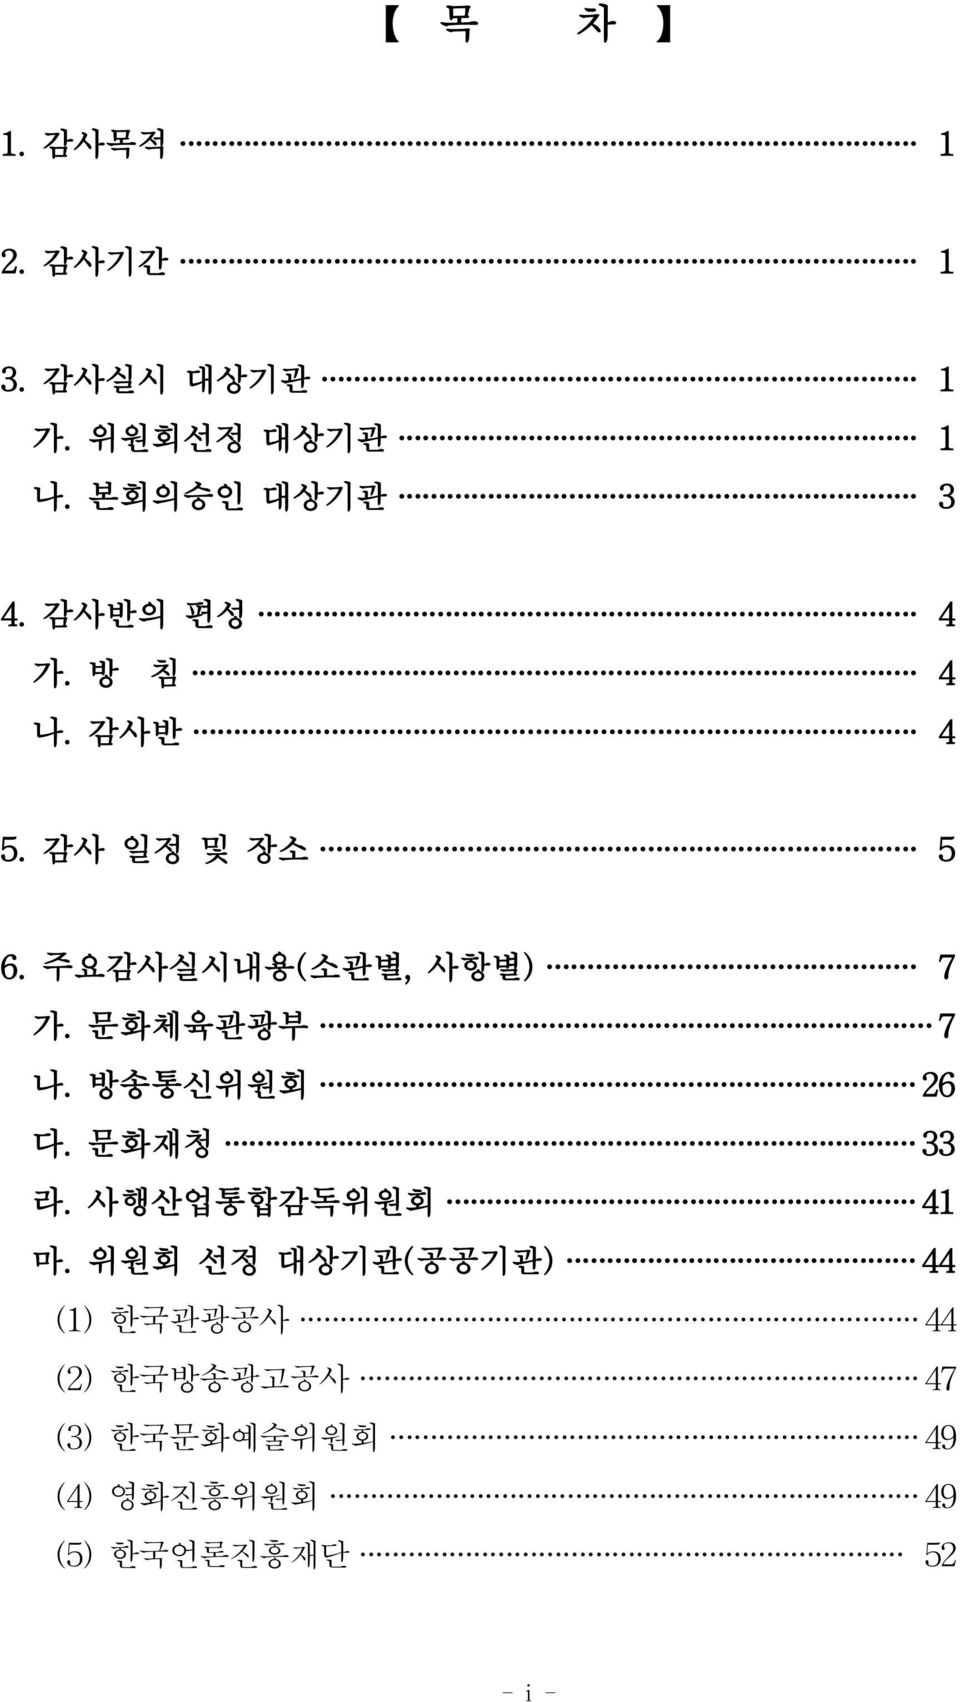 방송통신위원회 26 다. 문화재청 33 라. 사행산업통합감독위원회 41 마.